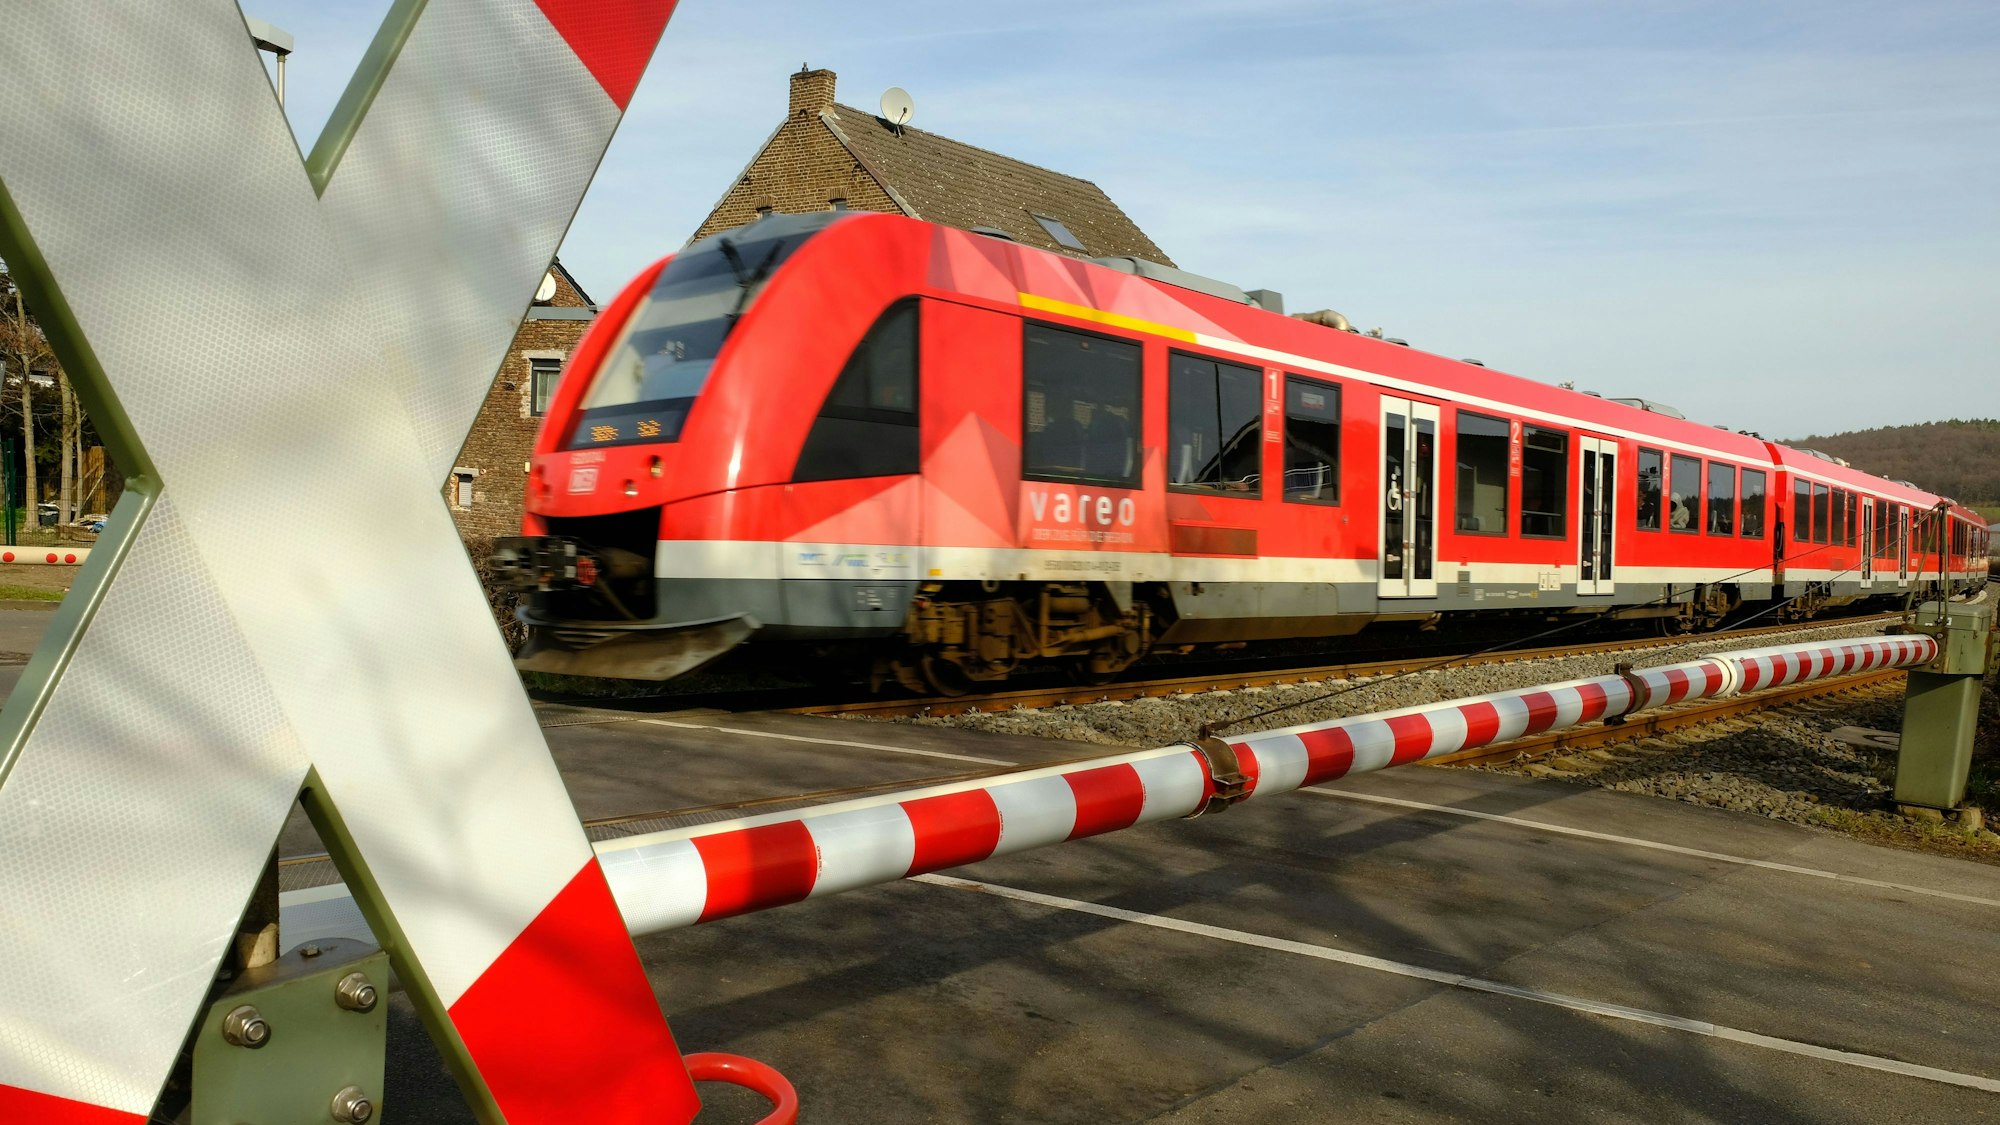 Ein Vareo-Zug der Deutschen Bahn an einem Bahnübergang auf der Eifelstrecke zwischen Köln und Trier.